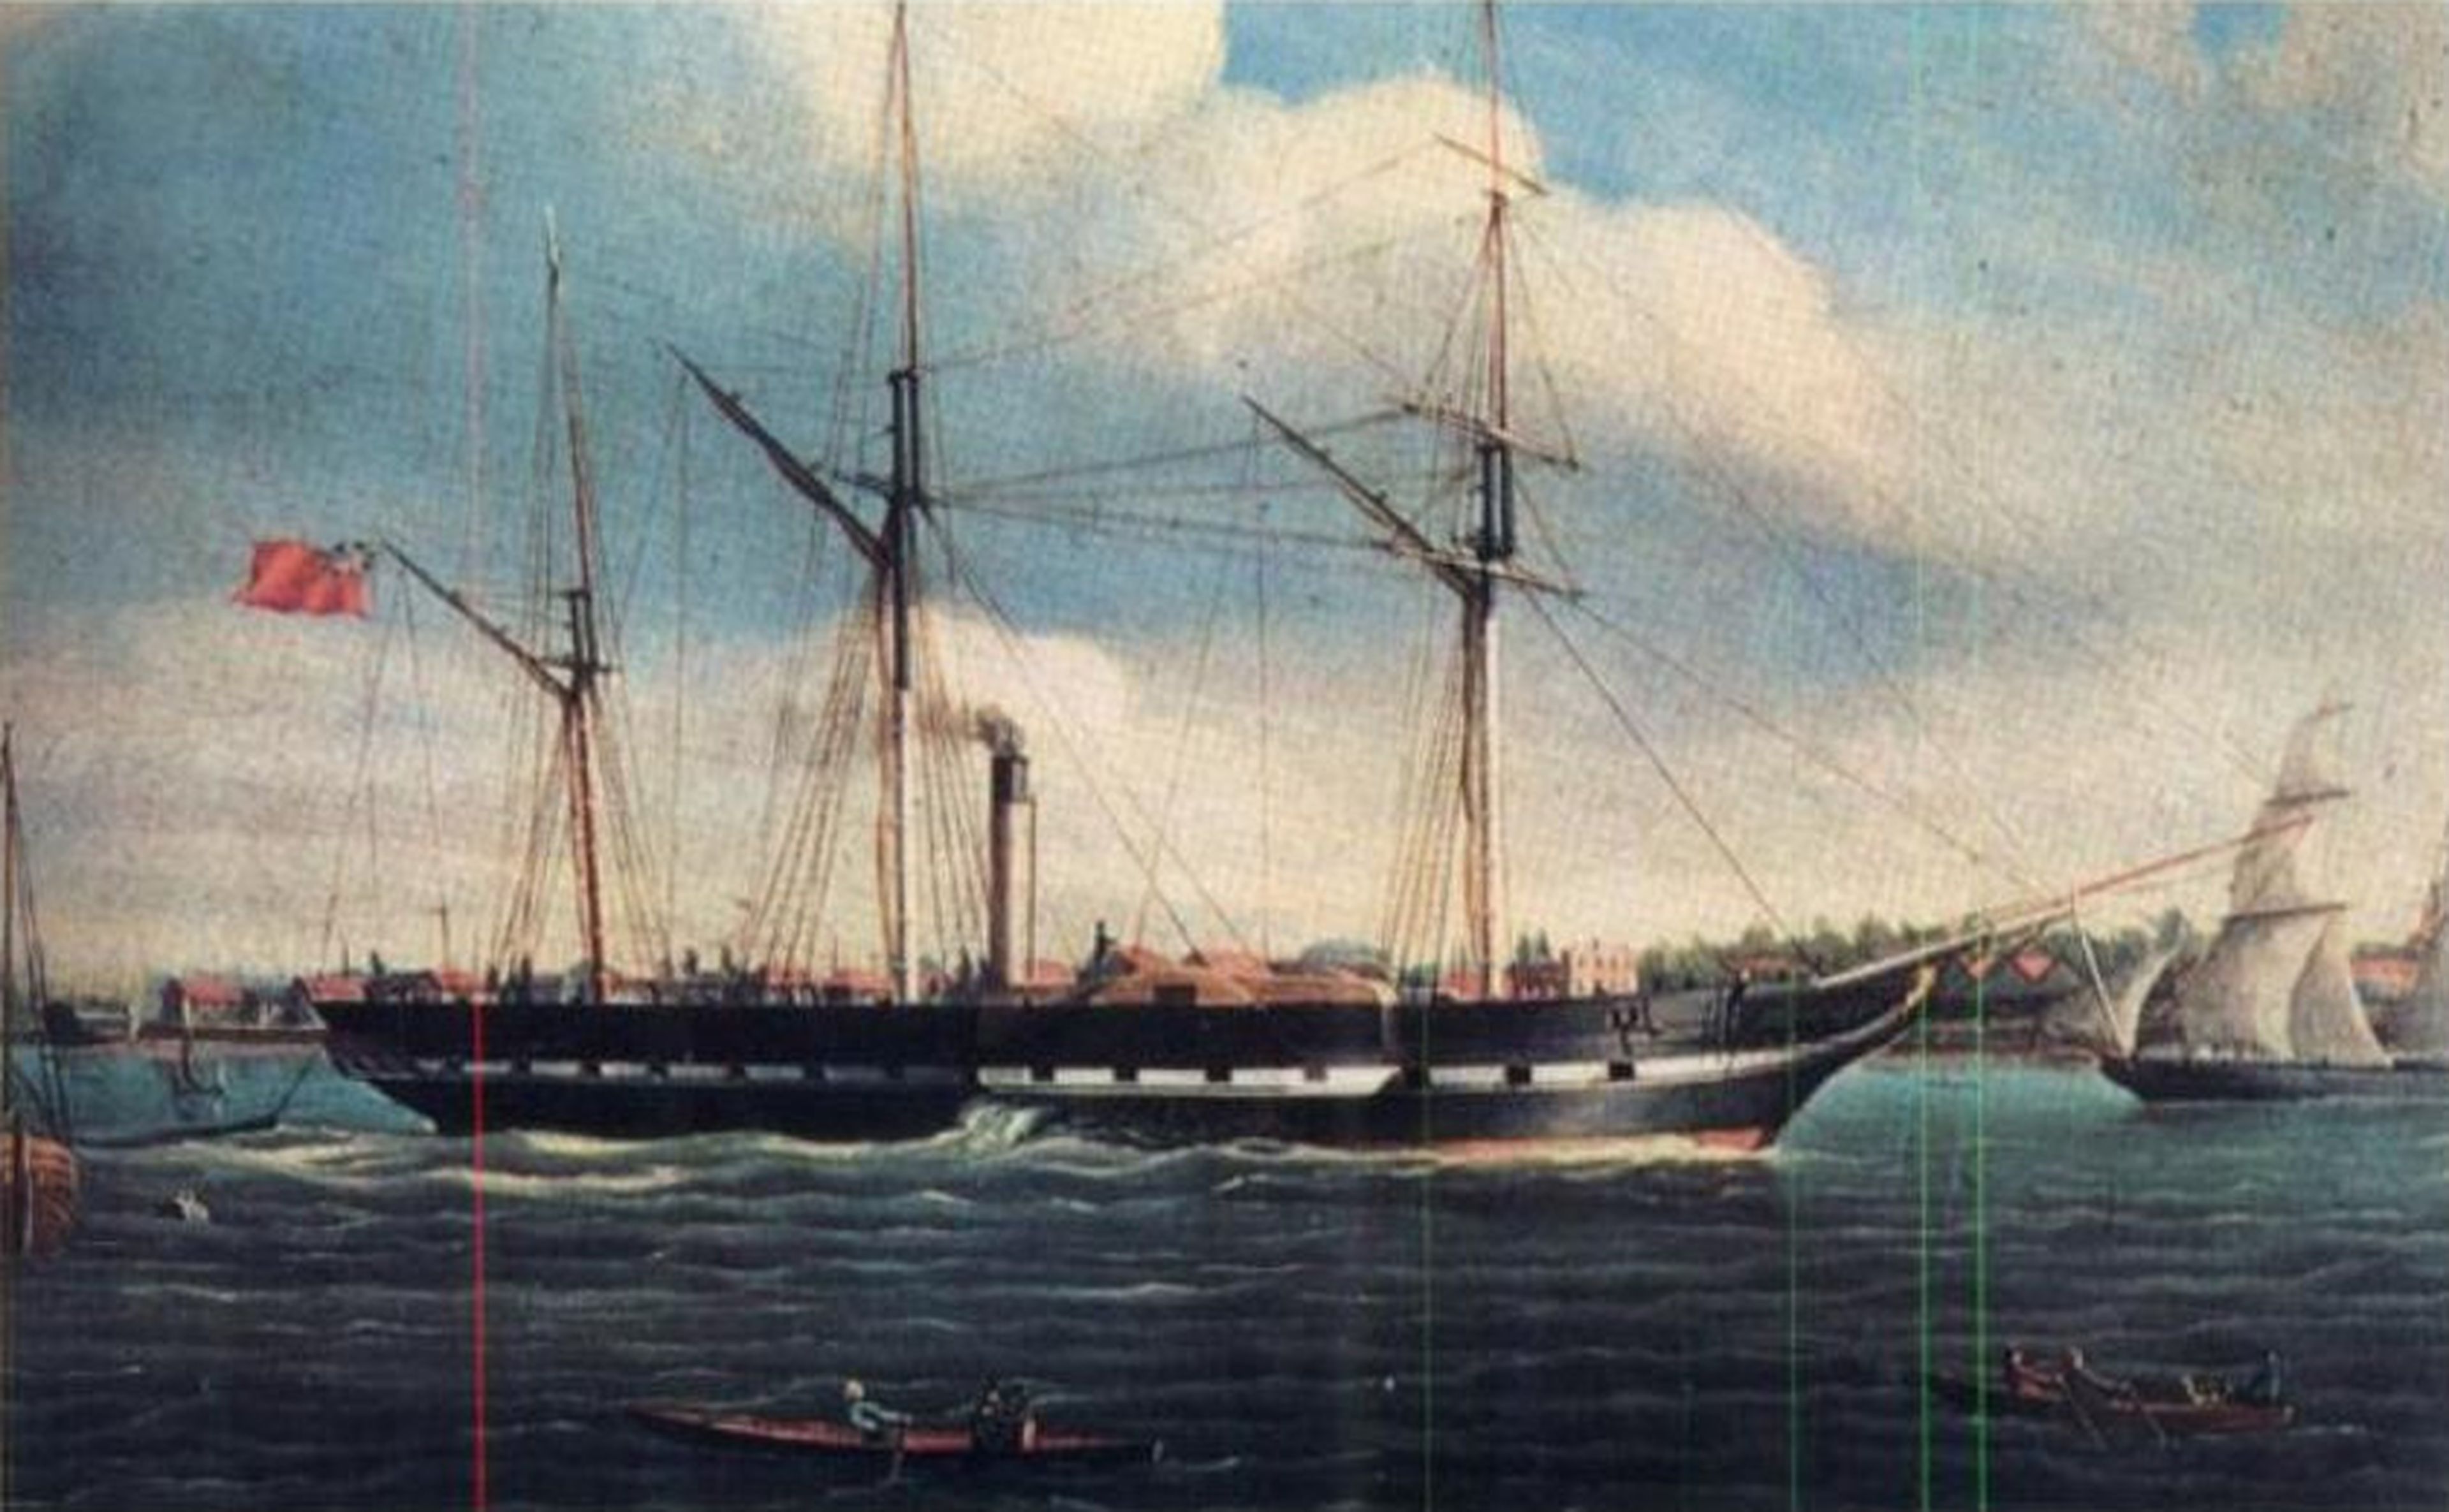 El SS Royal William, en 1834 - Wikipedia.